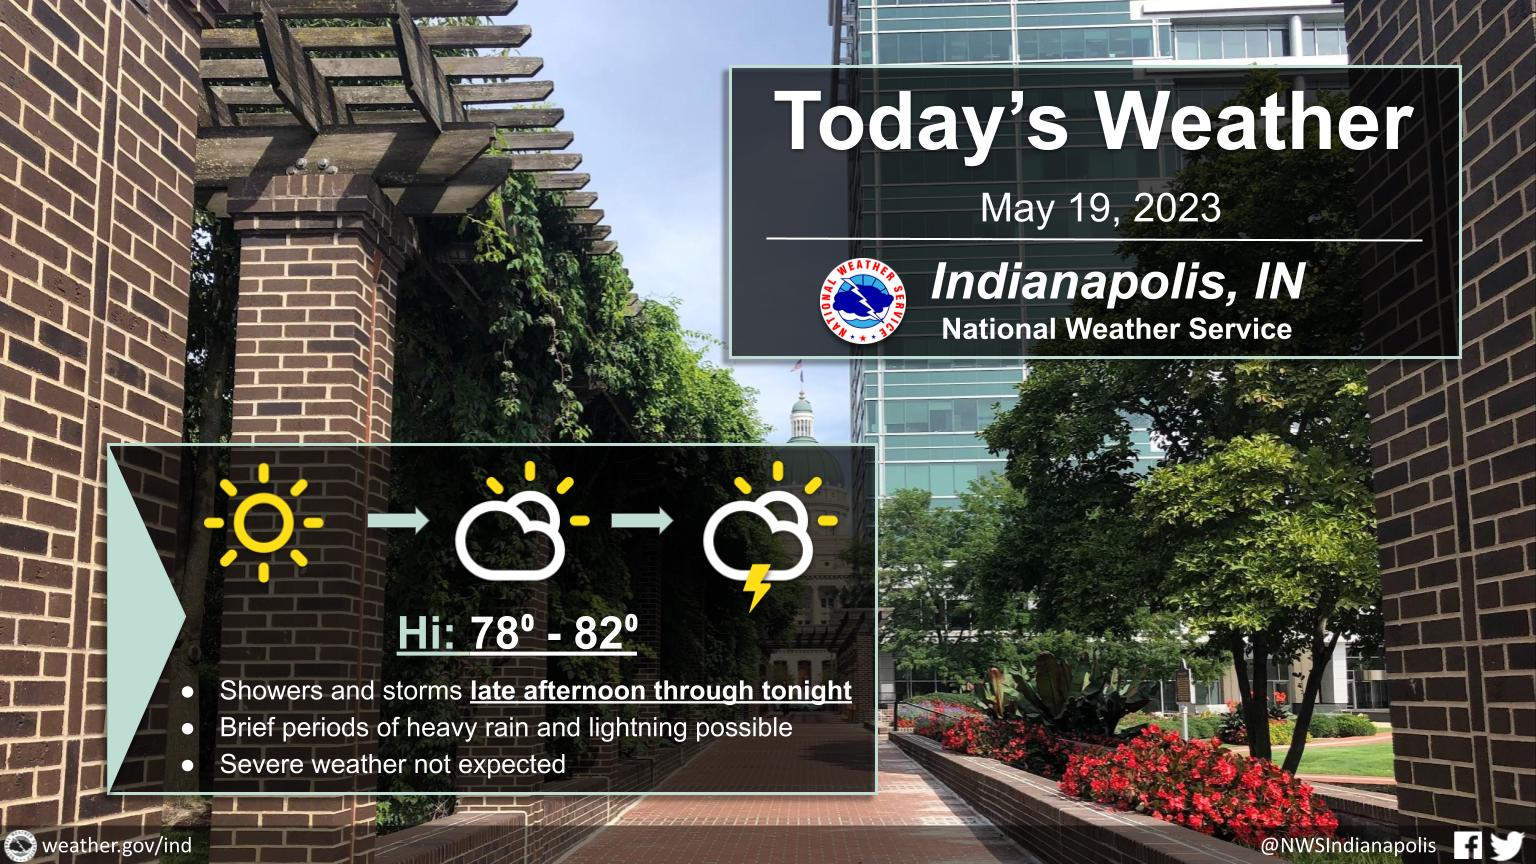 May 19, 2023, Indianapolis, Indiana Weather Forecast